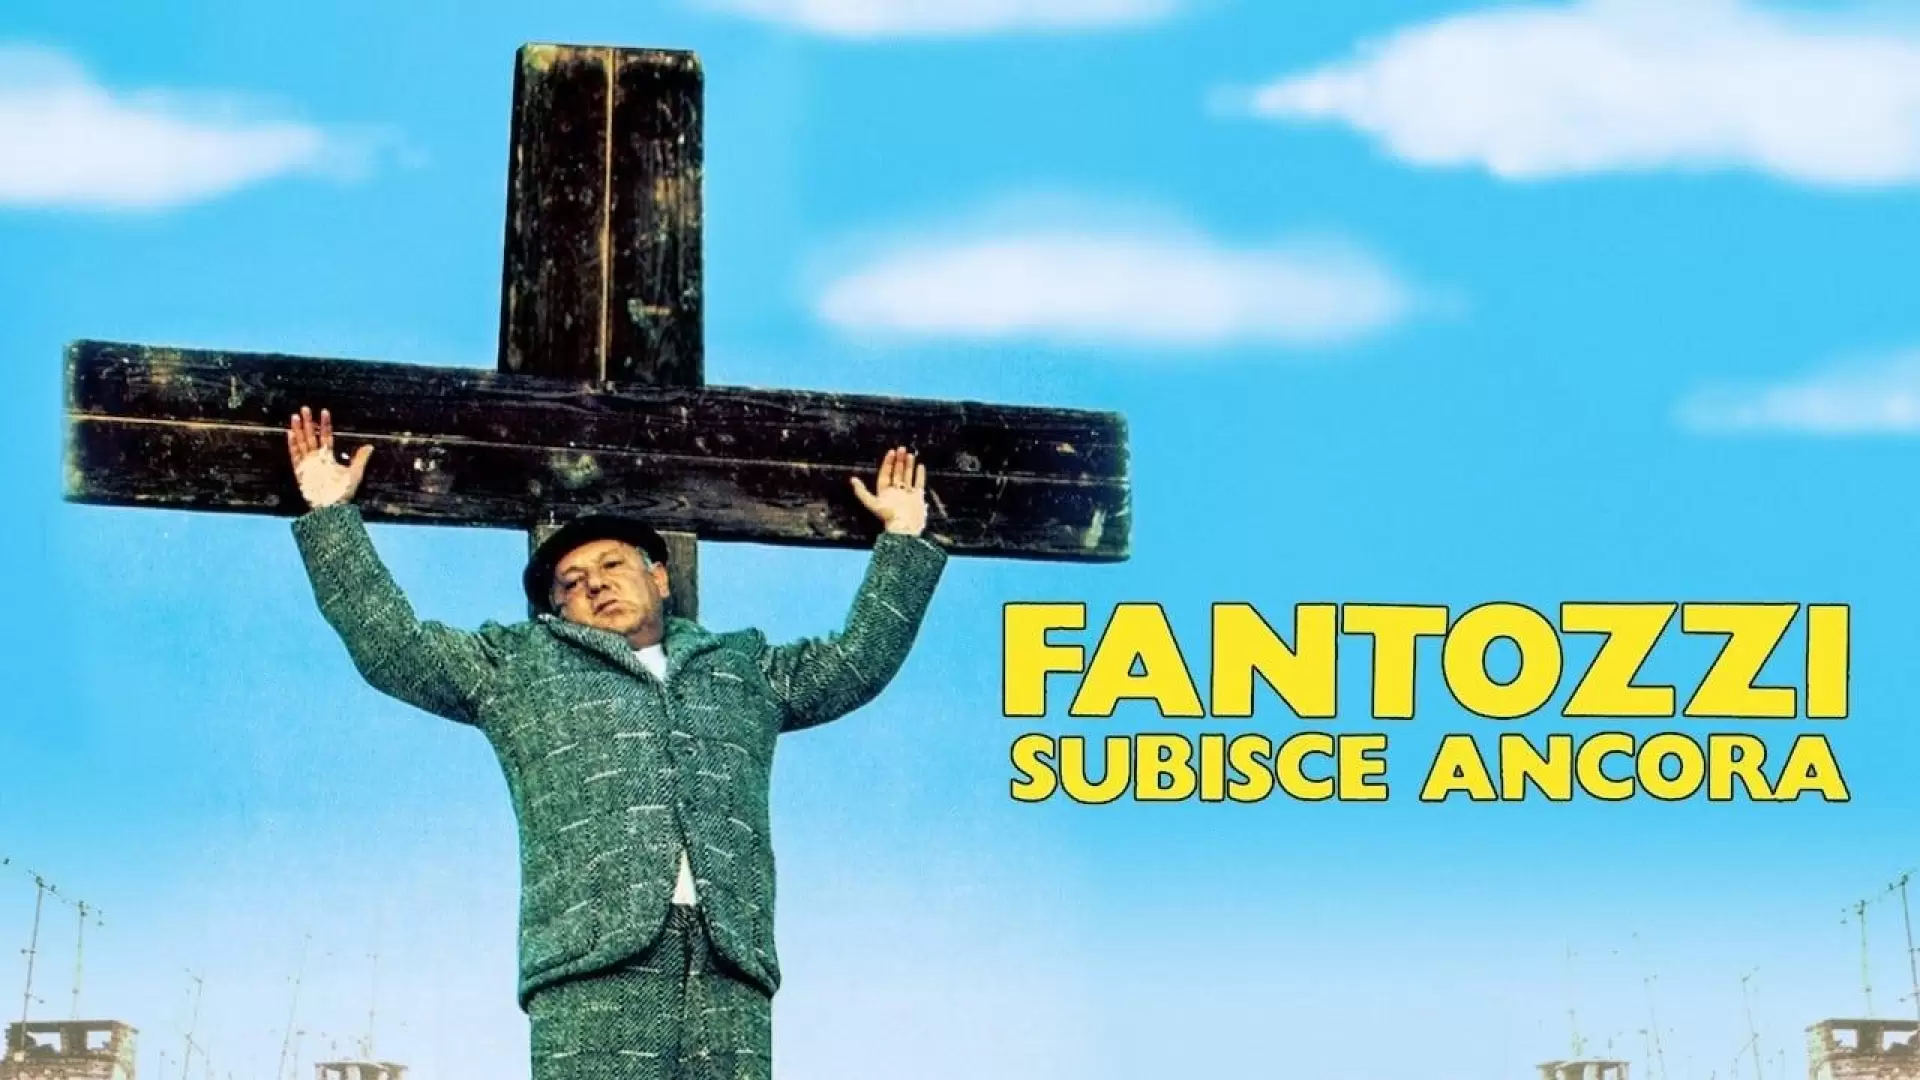 دانلود فیلم Fantozzi subisce ancora 1983 (فانتوزی هنوز رنج میبرد)